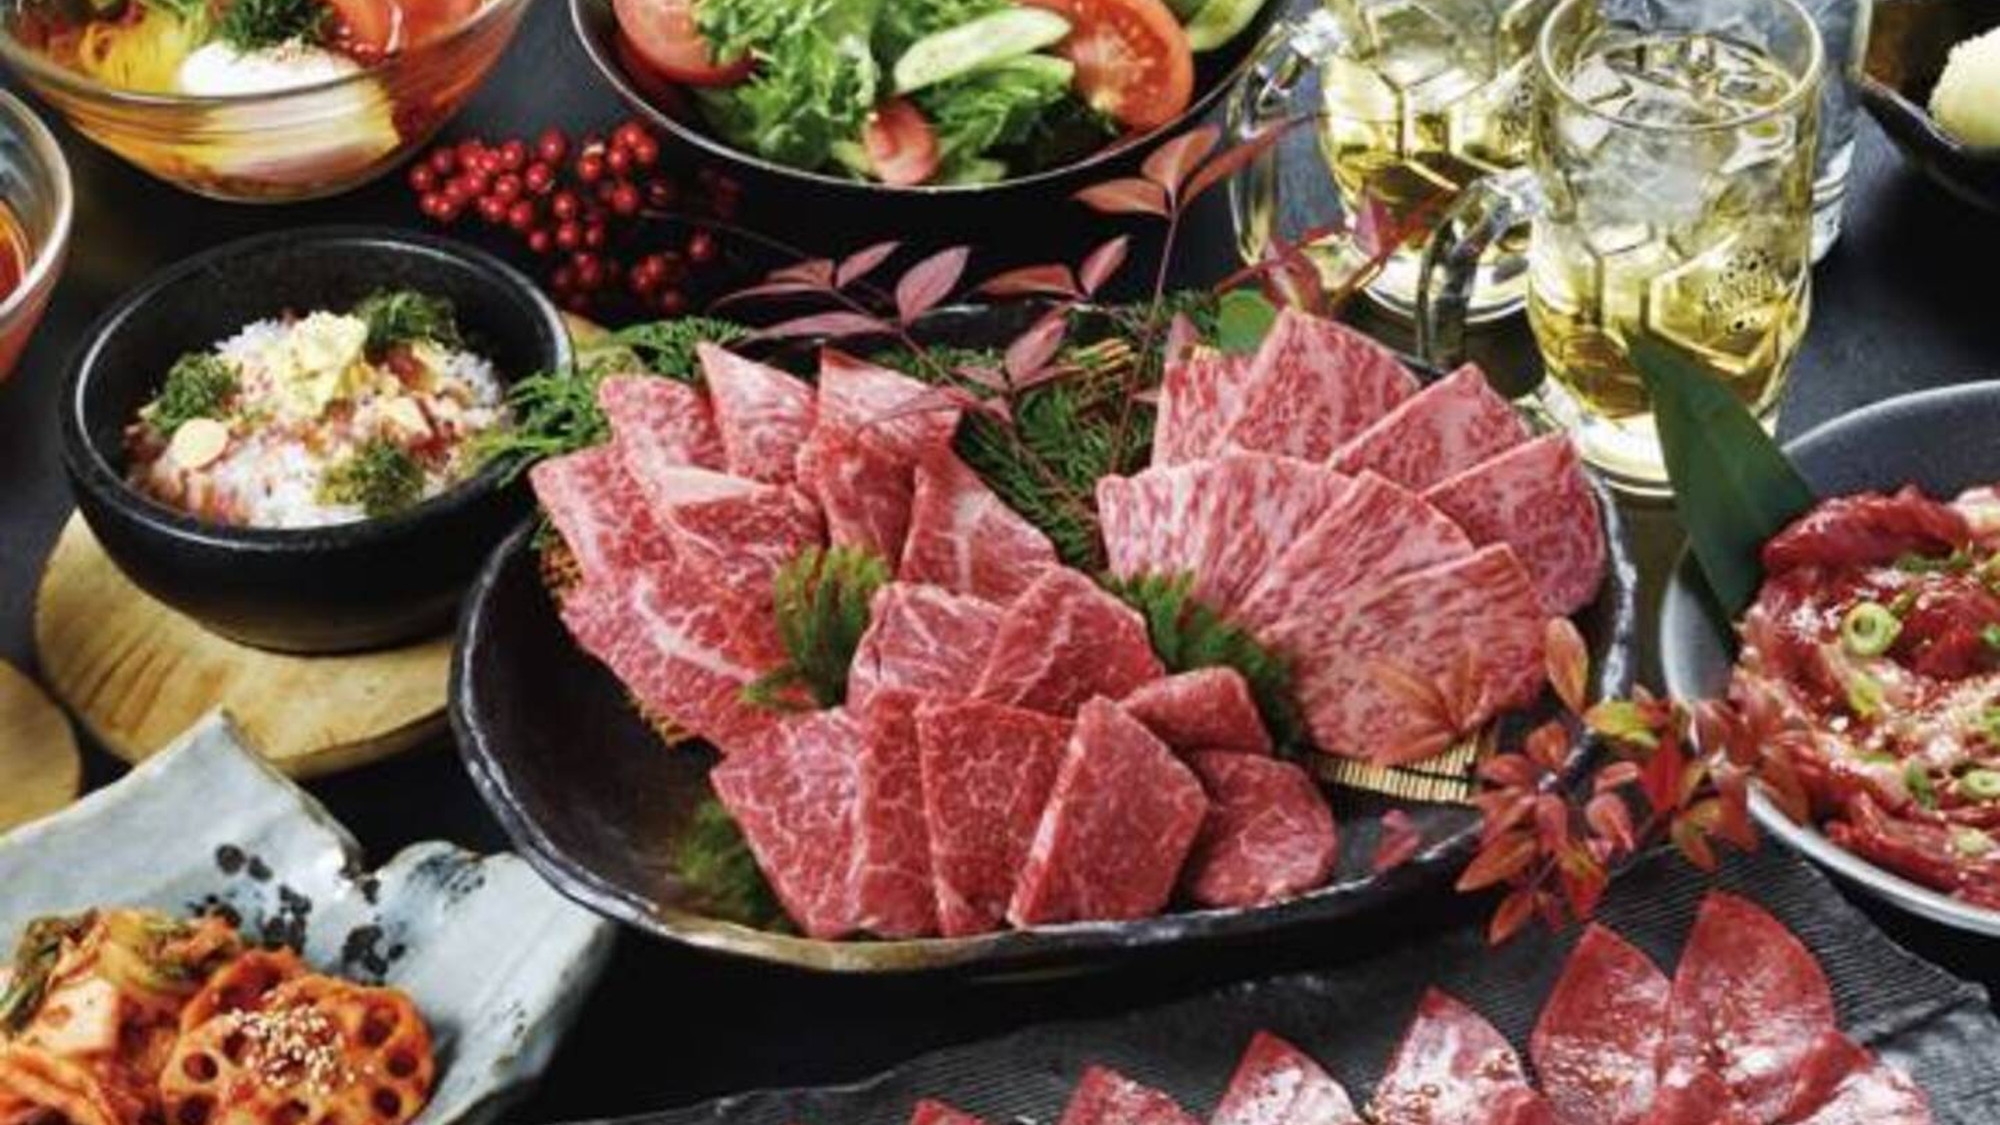 大阪なんばで松阪牛が味わえるお店「松阪牛焼肉Ｍ」のディナーコース付き【夕食付】